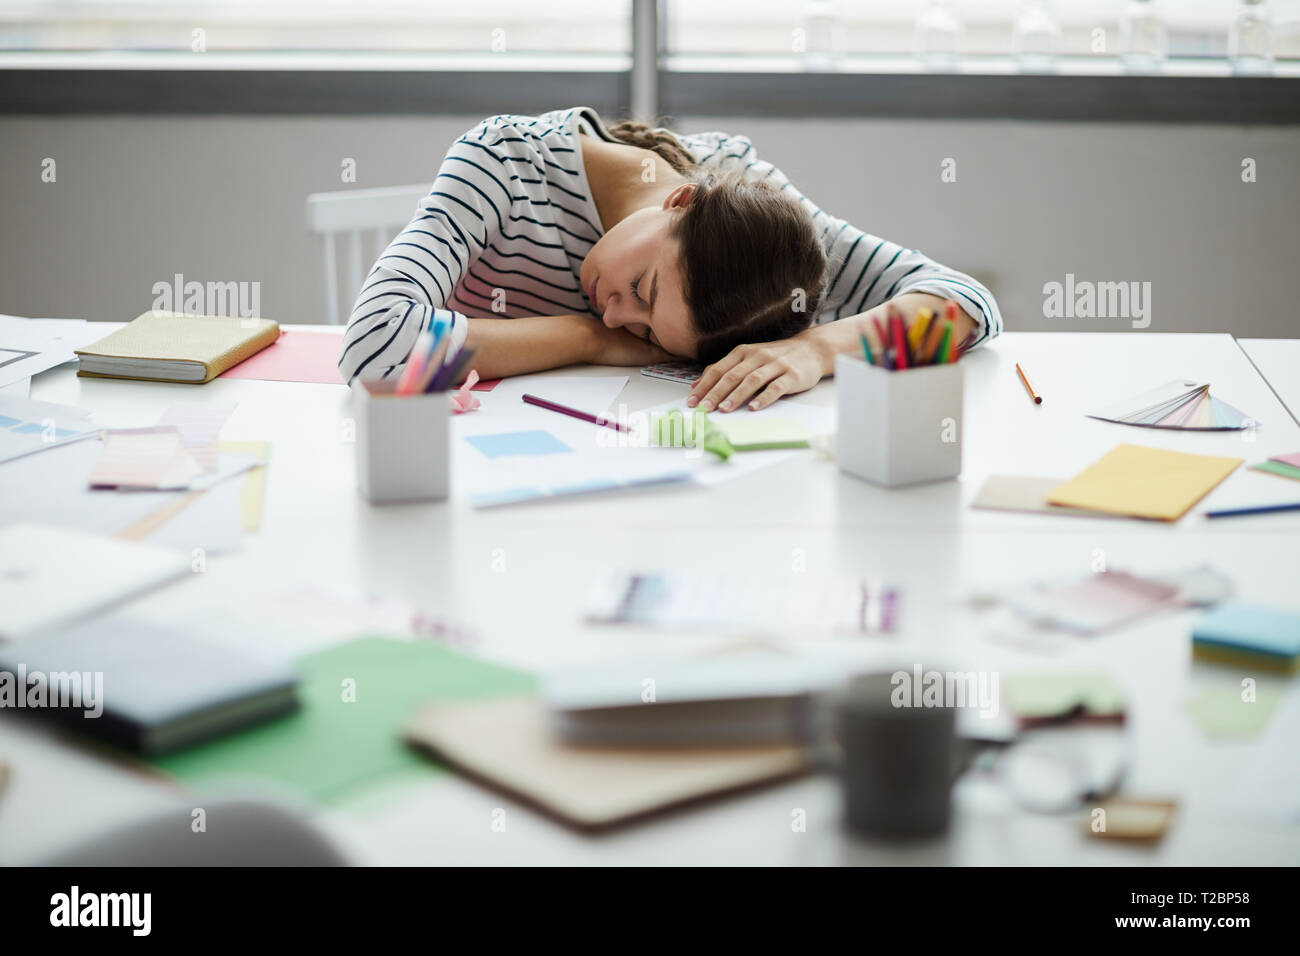 Porträt des zeitgenössischen junge Frau schlafen auf Tabelle bei der Arbeit, Platz kopieren Stockfoto